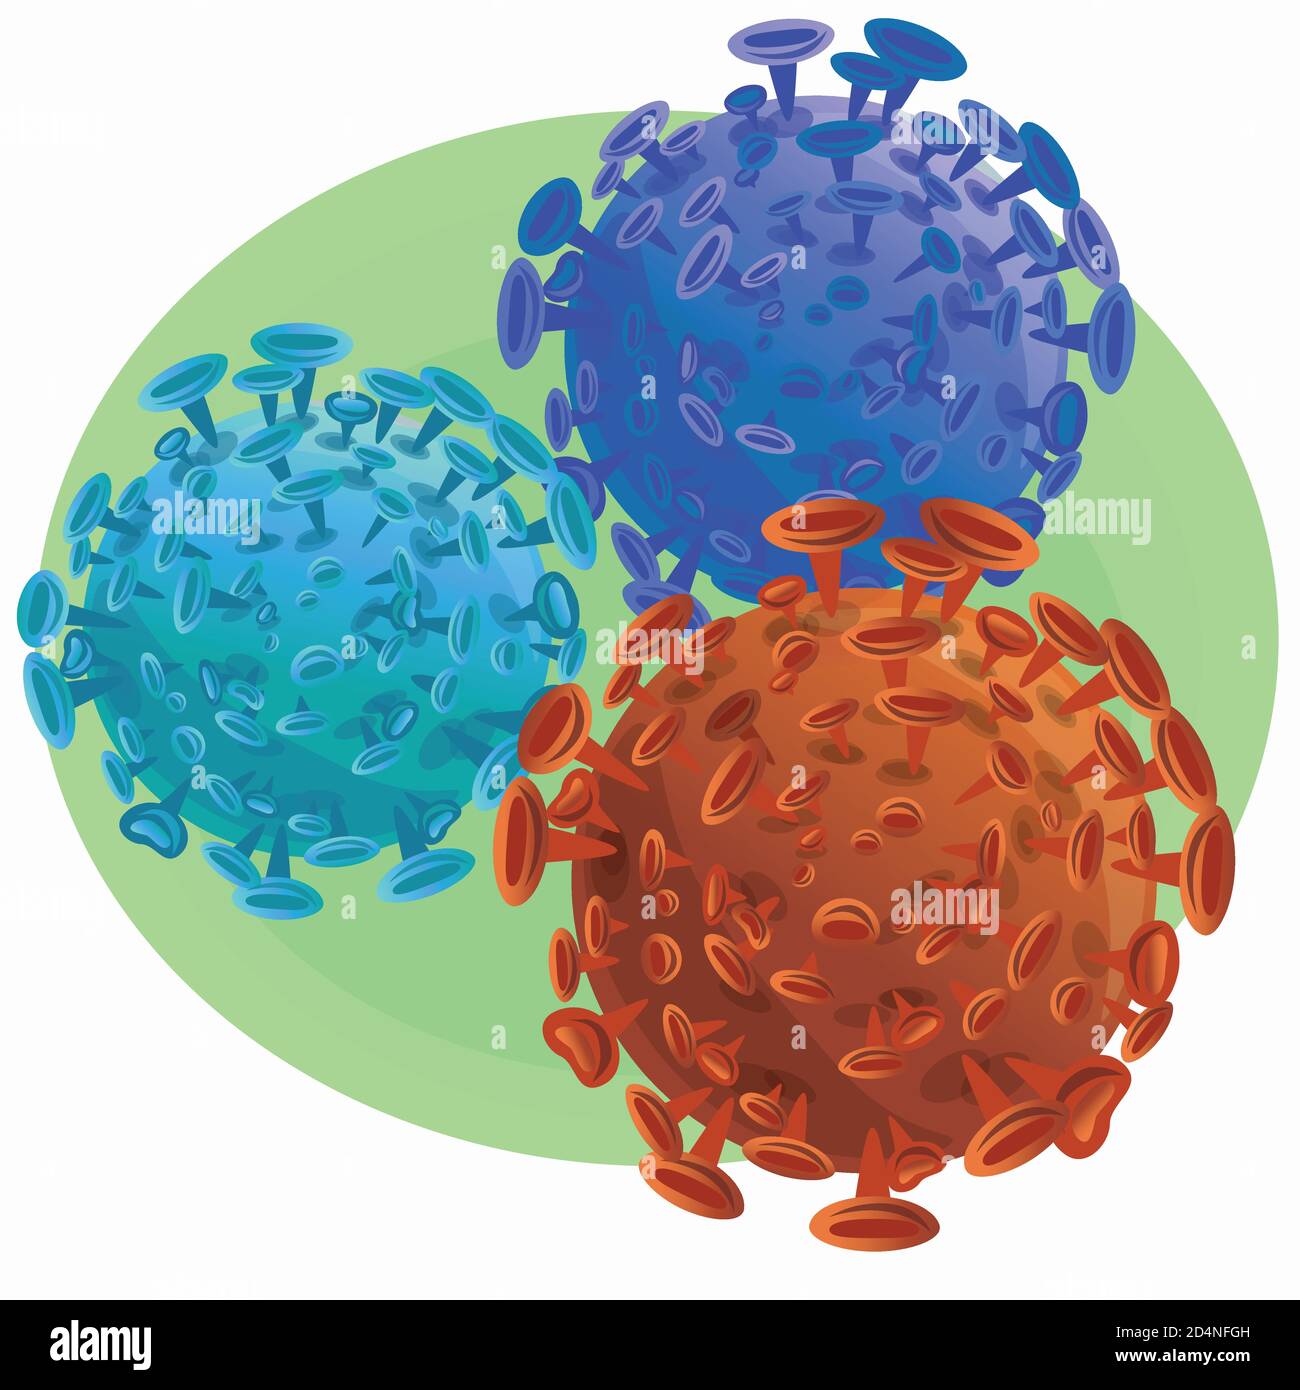 Ilustración de células microscópicas aisladas de color naranja y azul de coronavirus - bacterias SARS-CoV-2 sobre fondo verde. Ilustración del Vector